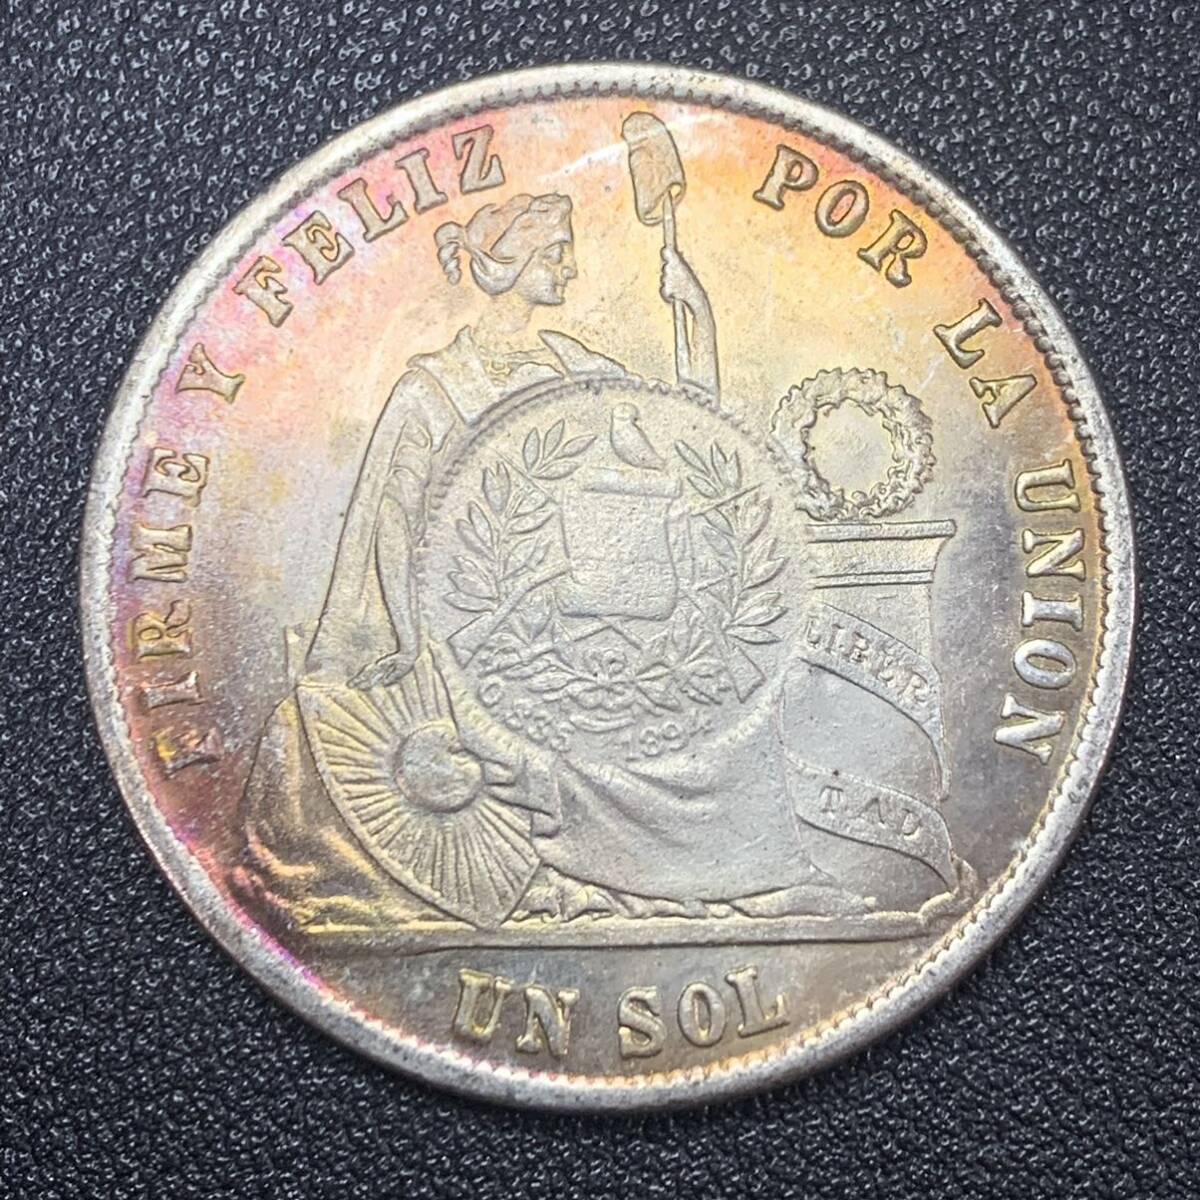 銀貨 古銭 1871年 グアテマラ 女性 リバティ 国章 「ペルー共和国の自由」 コイン 硬貨の画像1